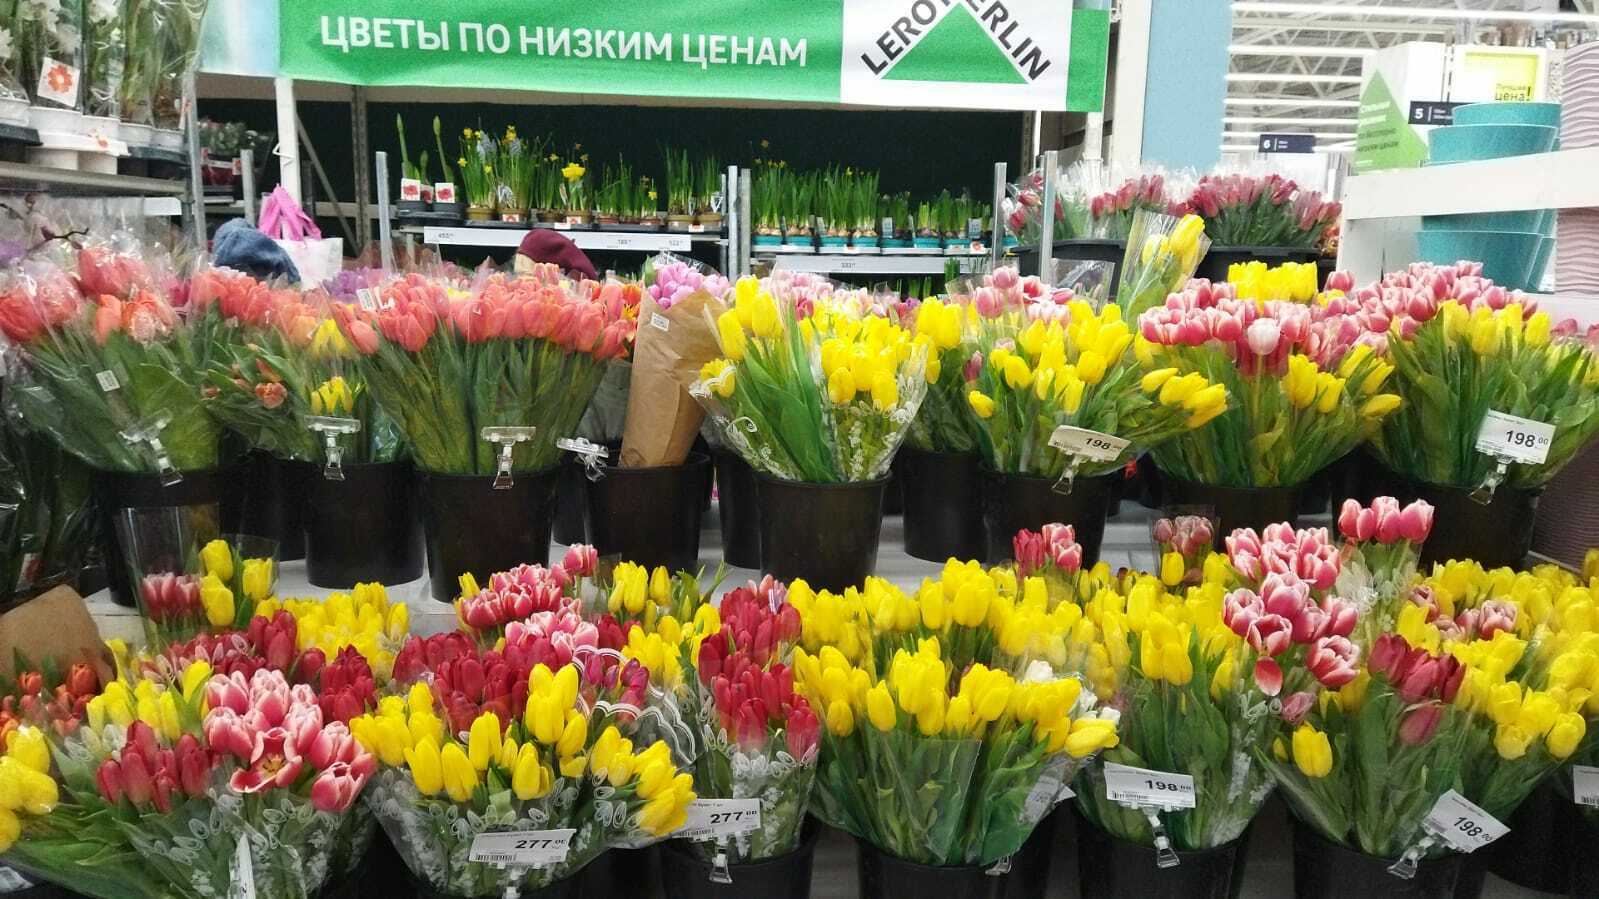 Купить тюльпаны в леруа мерлен